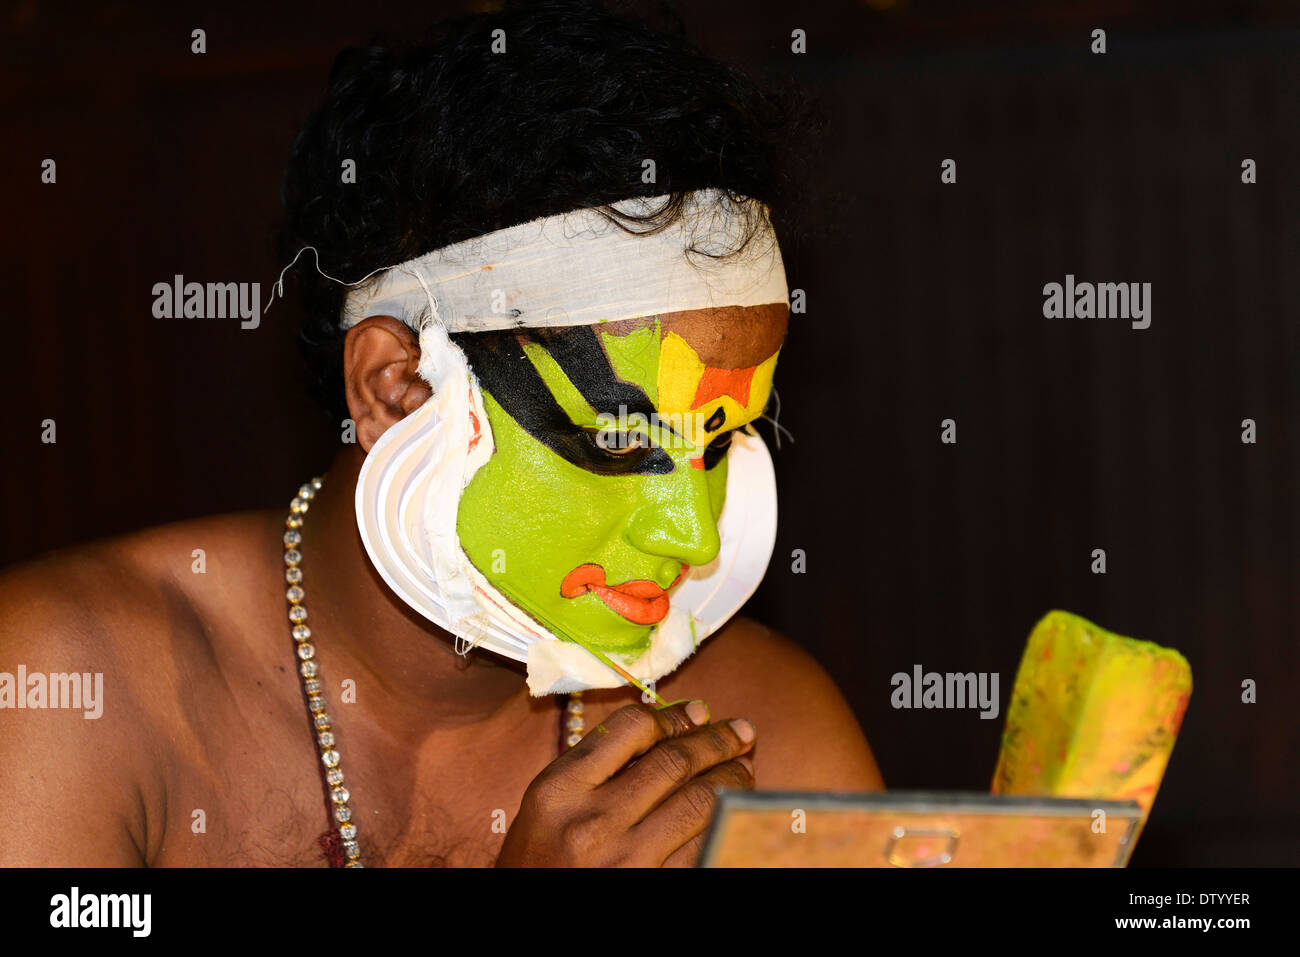 Danseuse de Kathakali appliquant le maquillage en préparation pour sa performance, Kochi, Kerala, Inde du Sud, Inde Banque D'Images